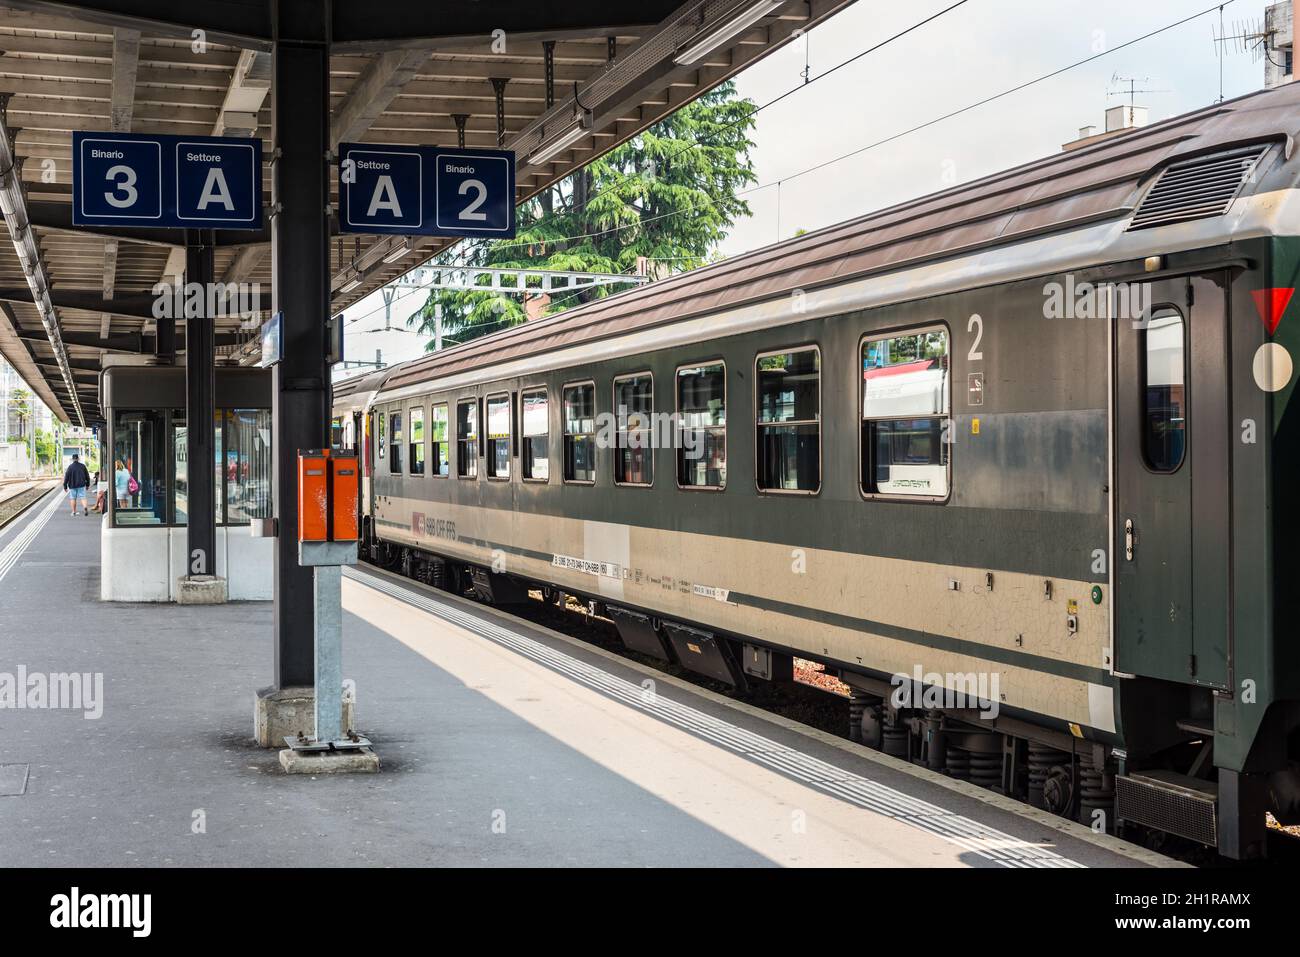 Bellinzona, Svizzera - 28 Maggio 2016: un treno passeggeri delle Ferrovie Federali Svizzere in una piattaforma di Bellinzona stazione ferroviaria. Ufficio federale Foto Stock